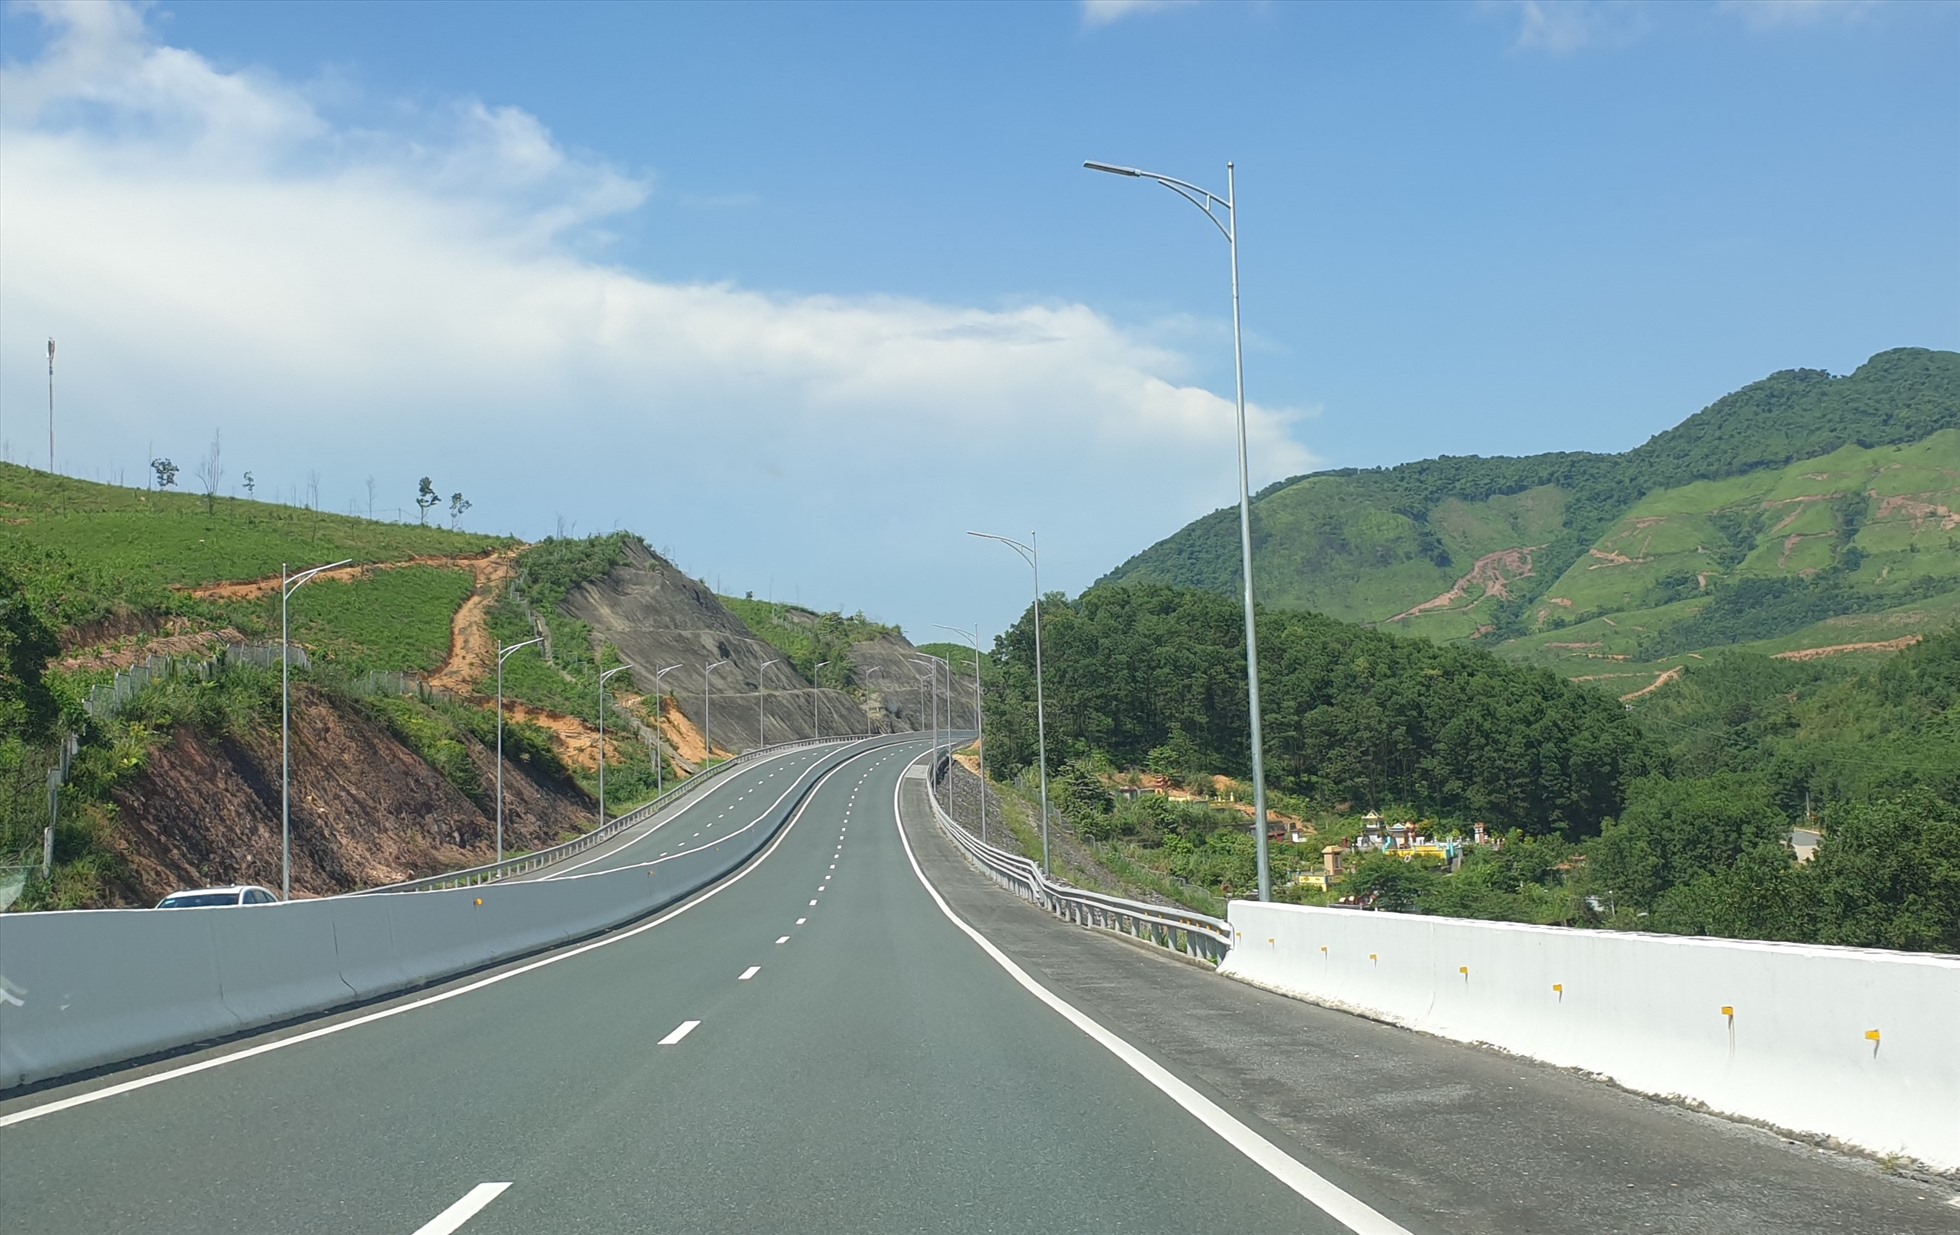 Cao tốc Hạ Long - Vân Đồn, dài hơn 60km, được đưa vào sử dụng năm 2019 nhưng đến nay vẫn chưa có trạm dừng chân. Ảnh: Nguyễn Hùng